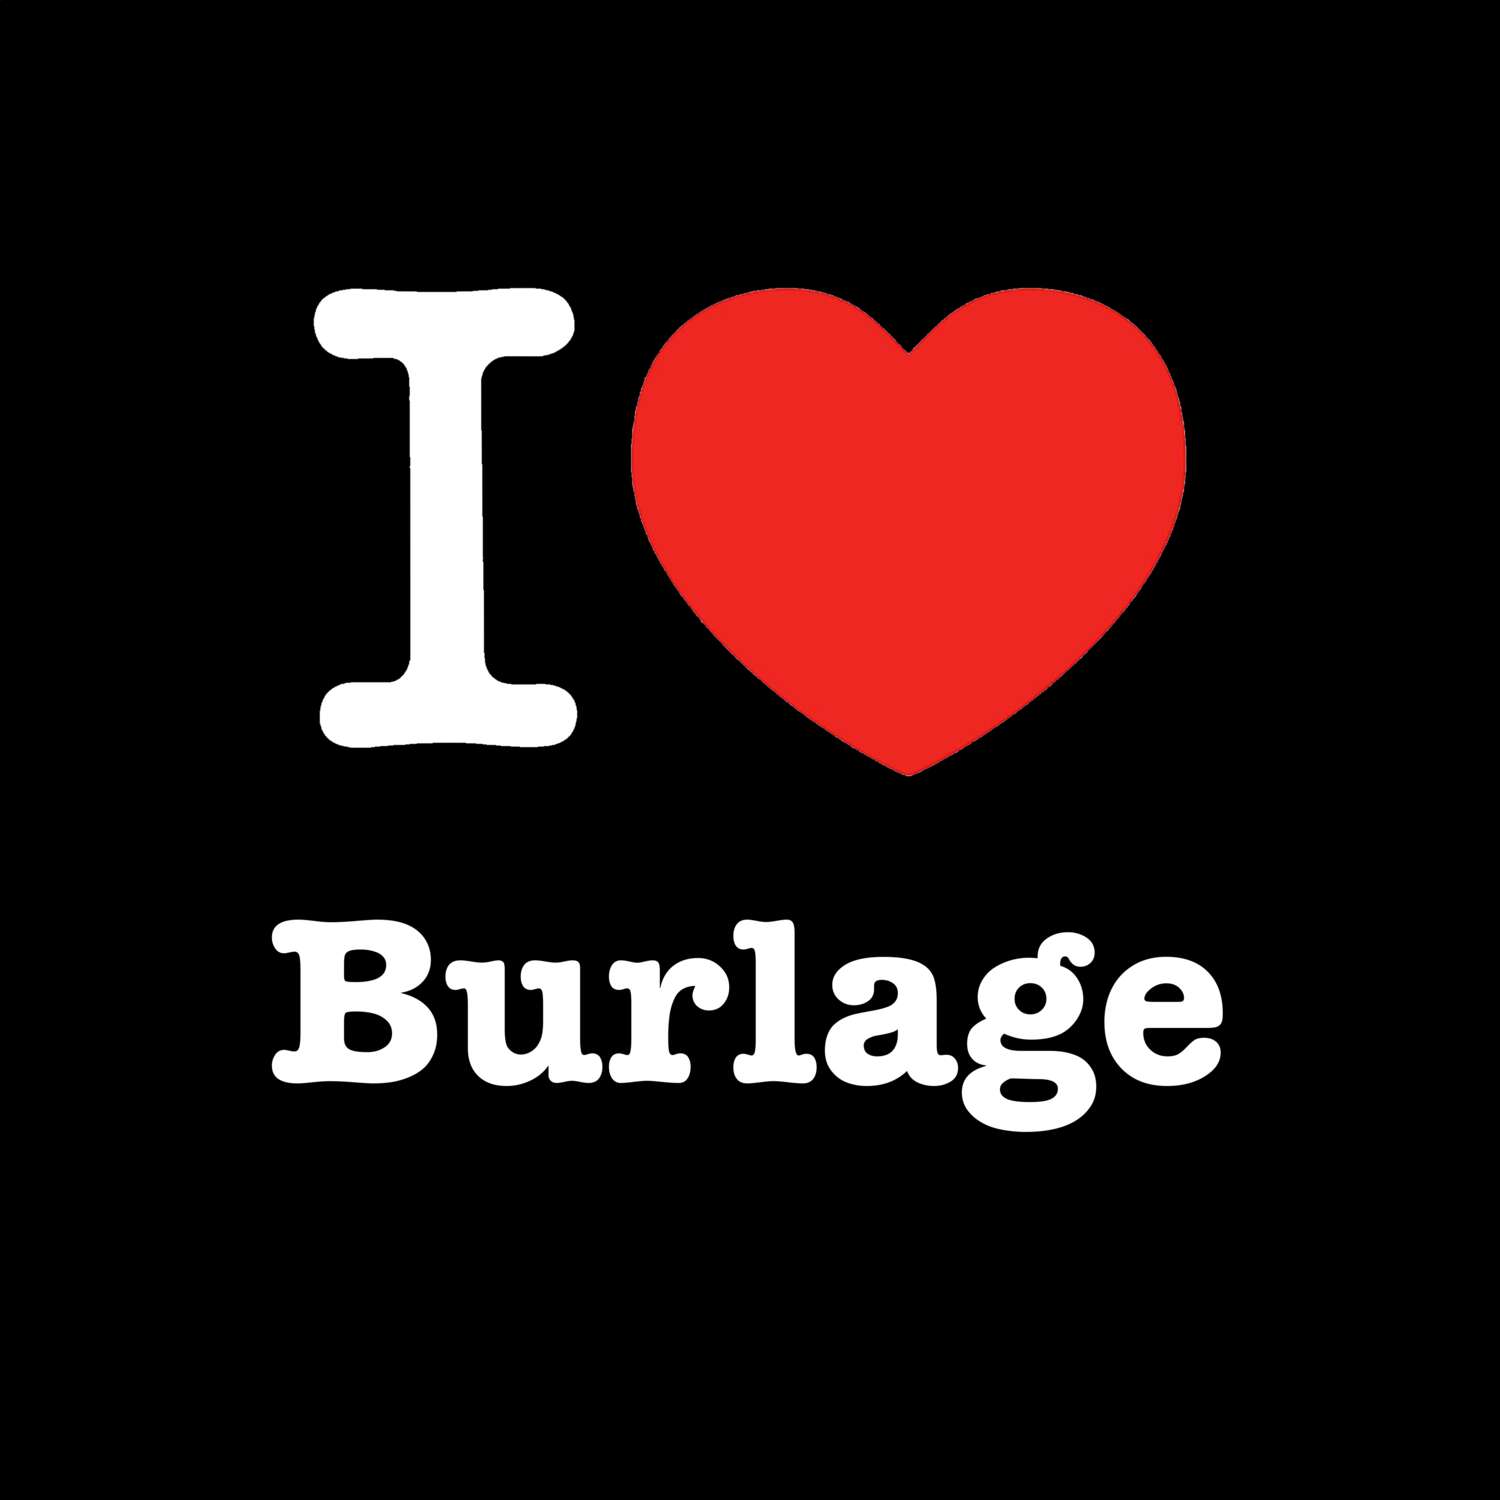 Burlage T-Shirt »I love«